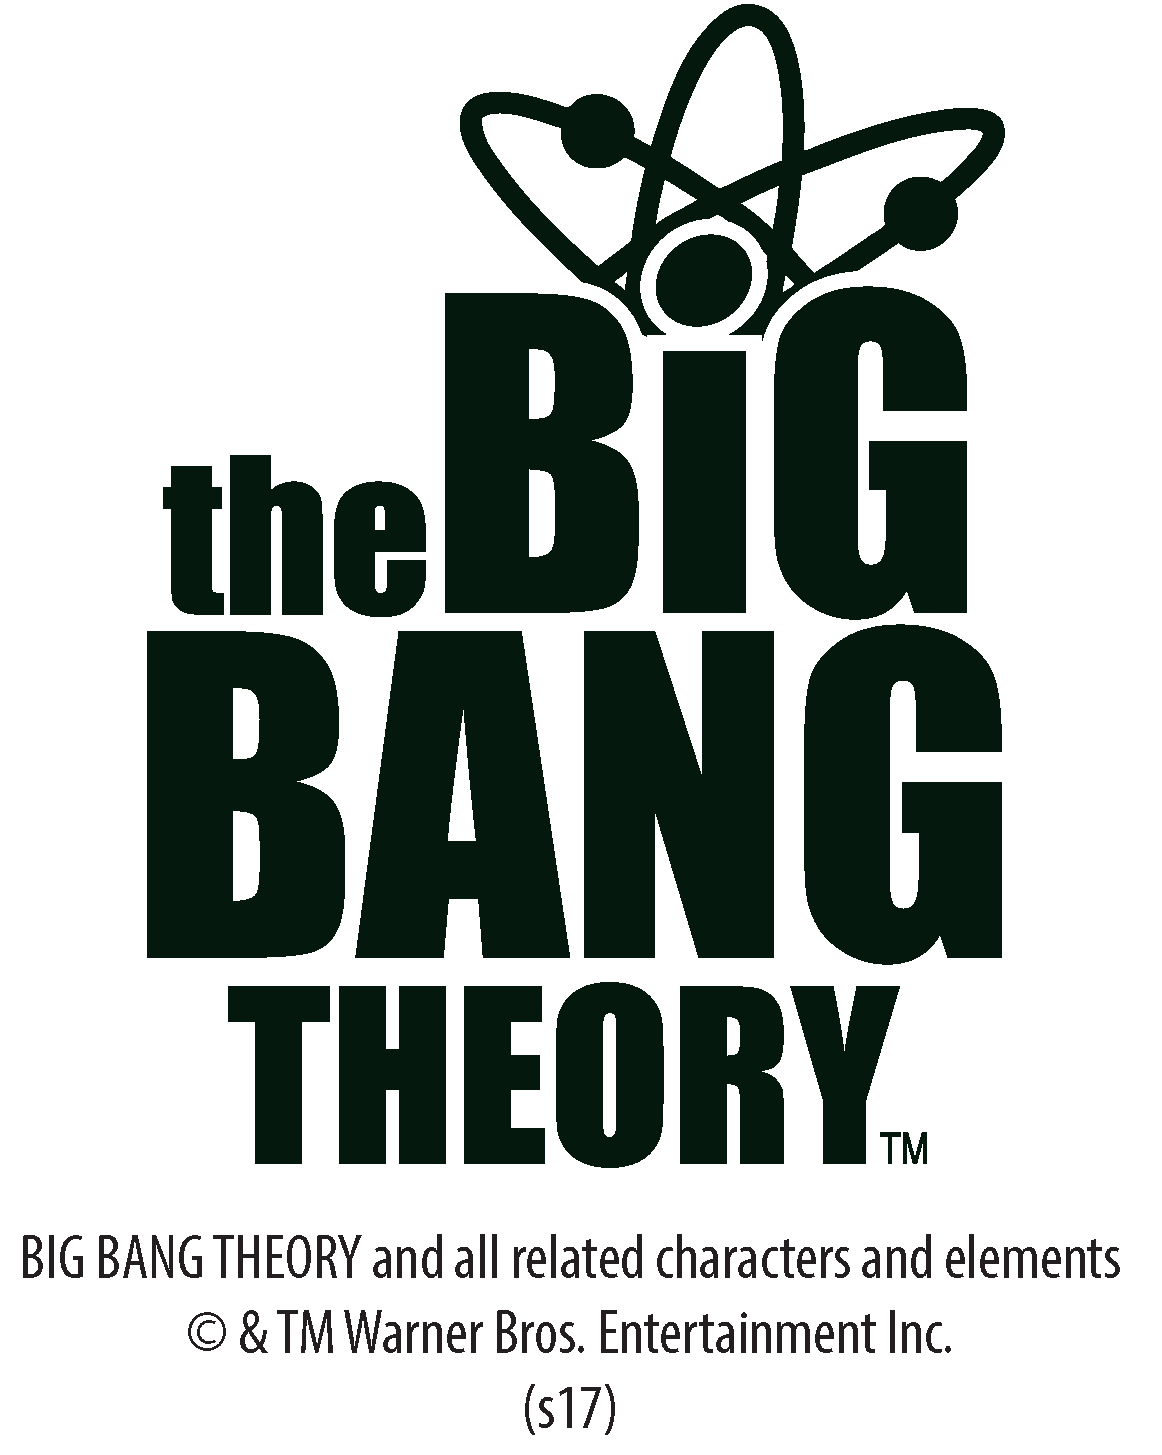 Big Bang Theory +Logo Rock Lizard Spock Official Women's T-shirt